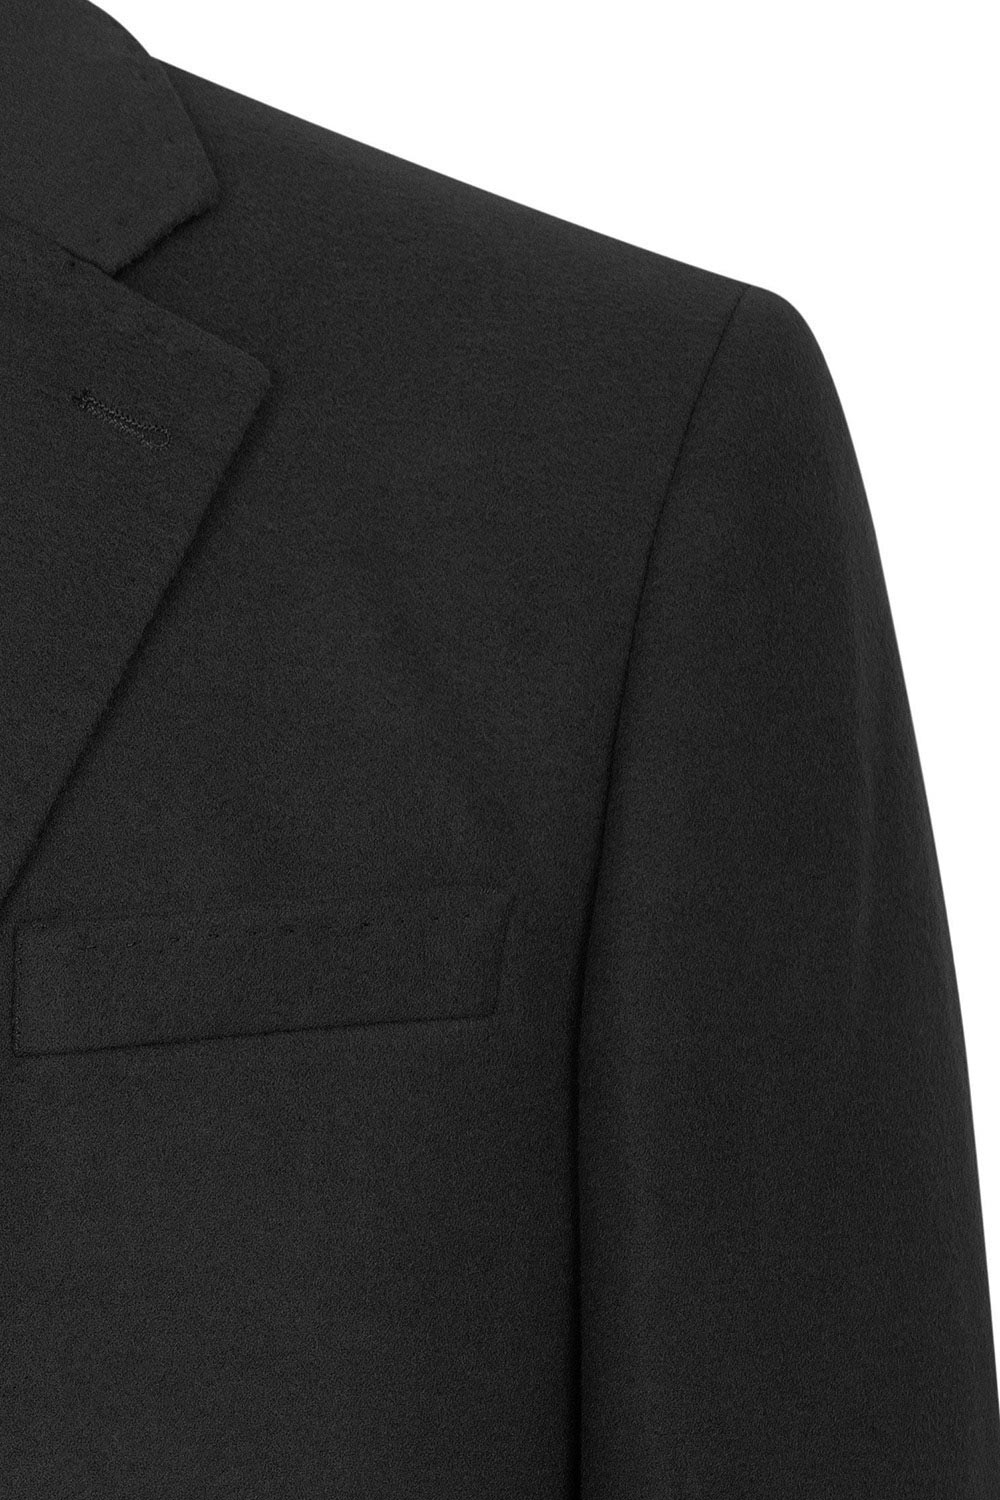 Palton negru uni 2